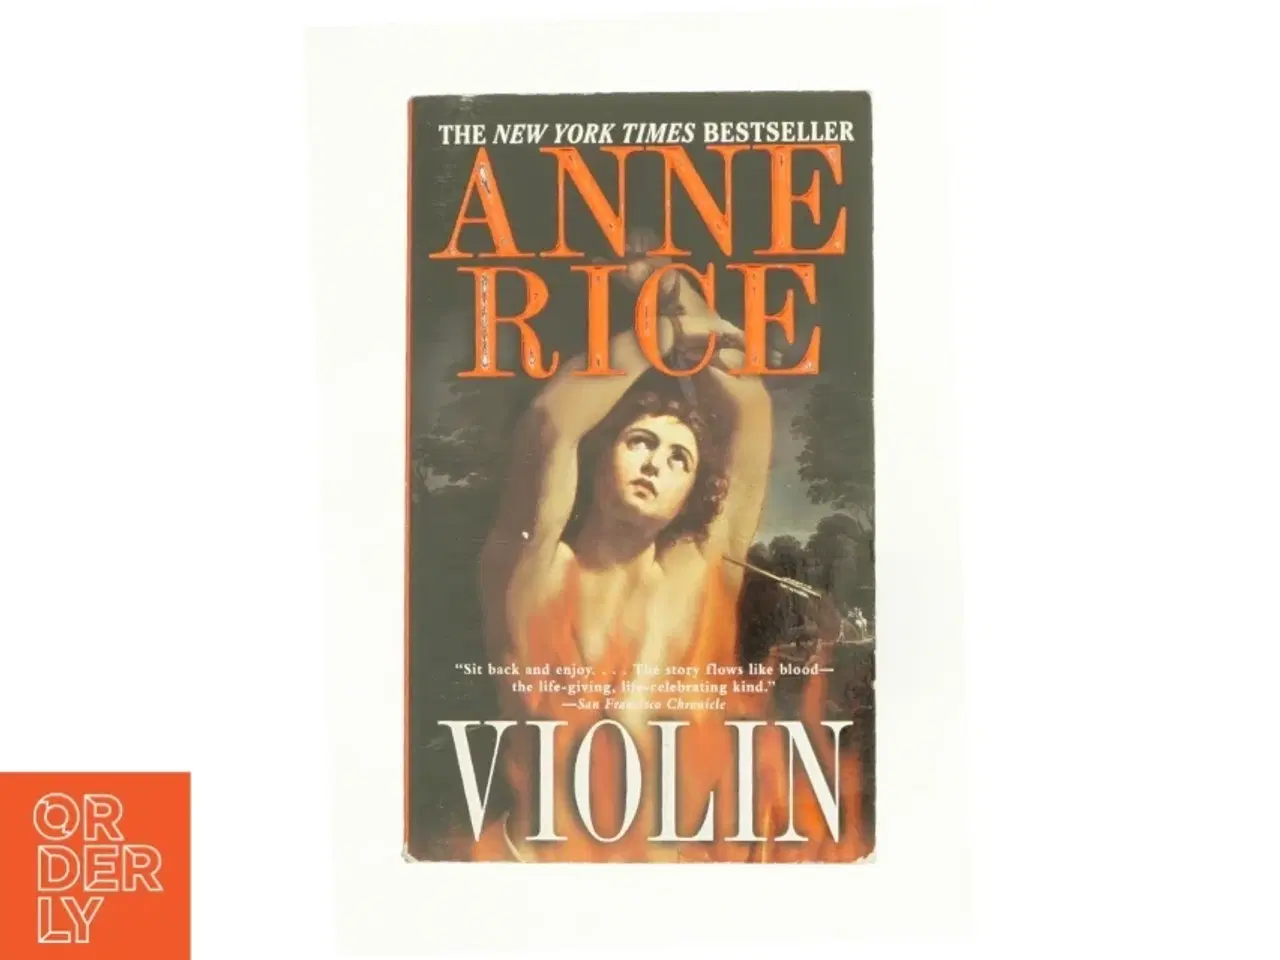 Billede 1 - Violin af Anne Rice (bog)